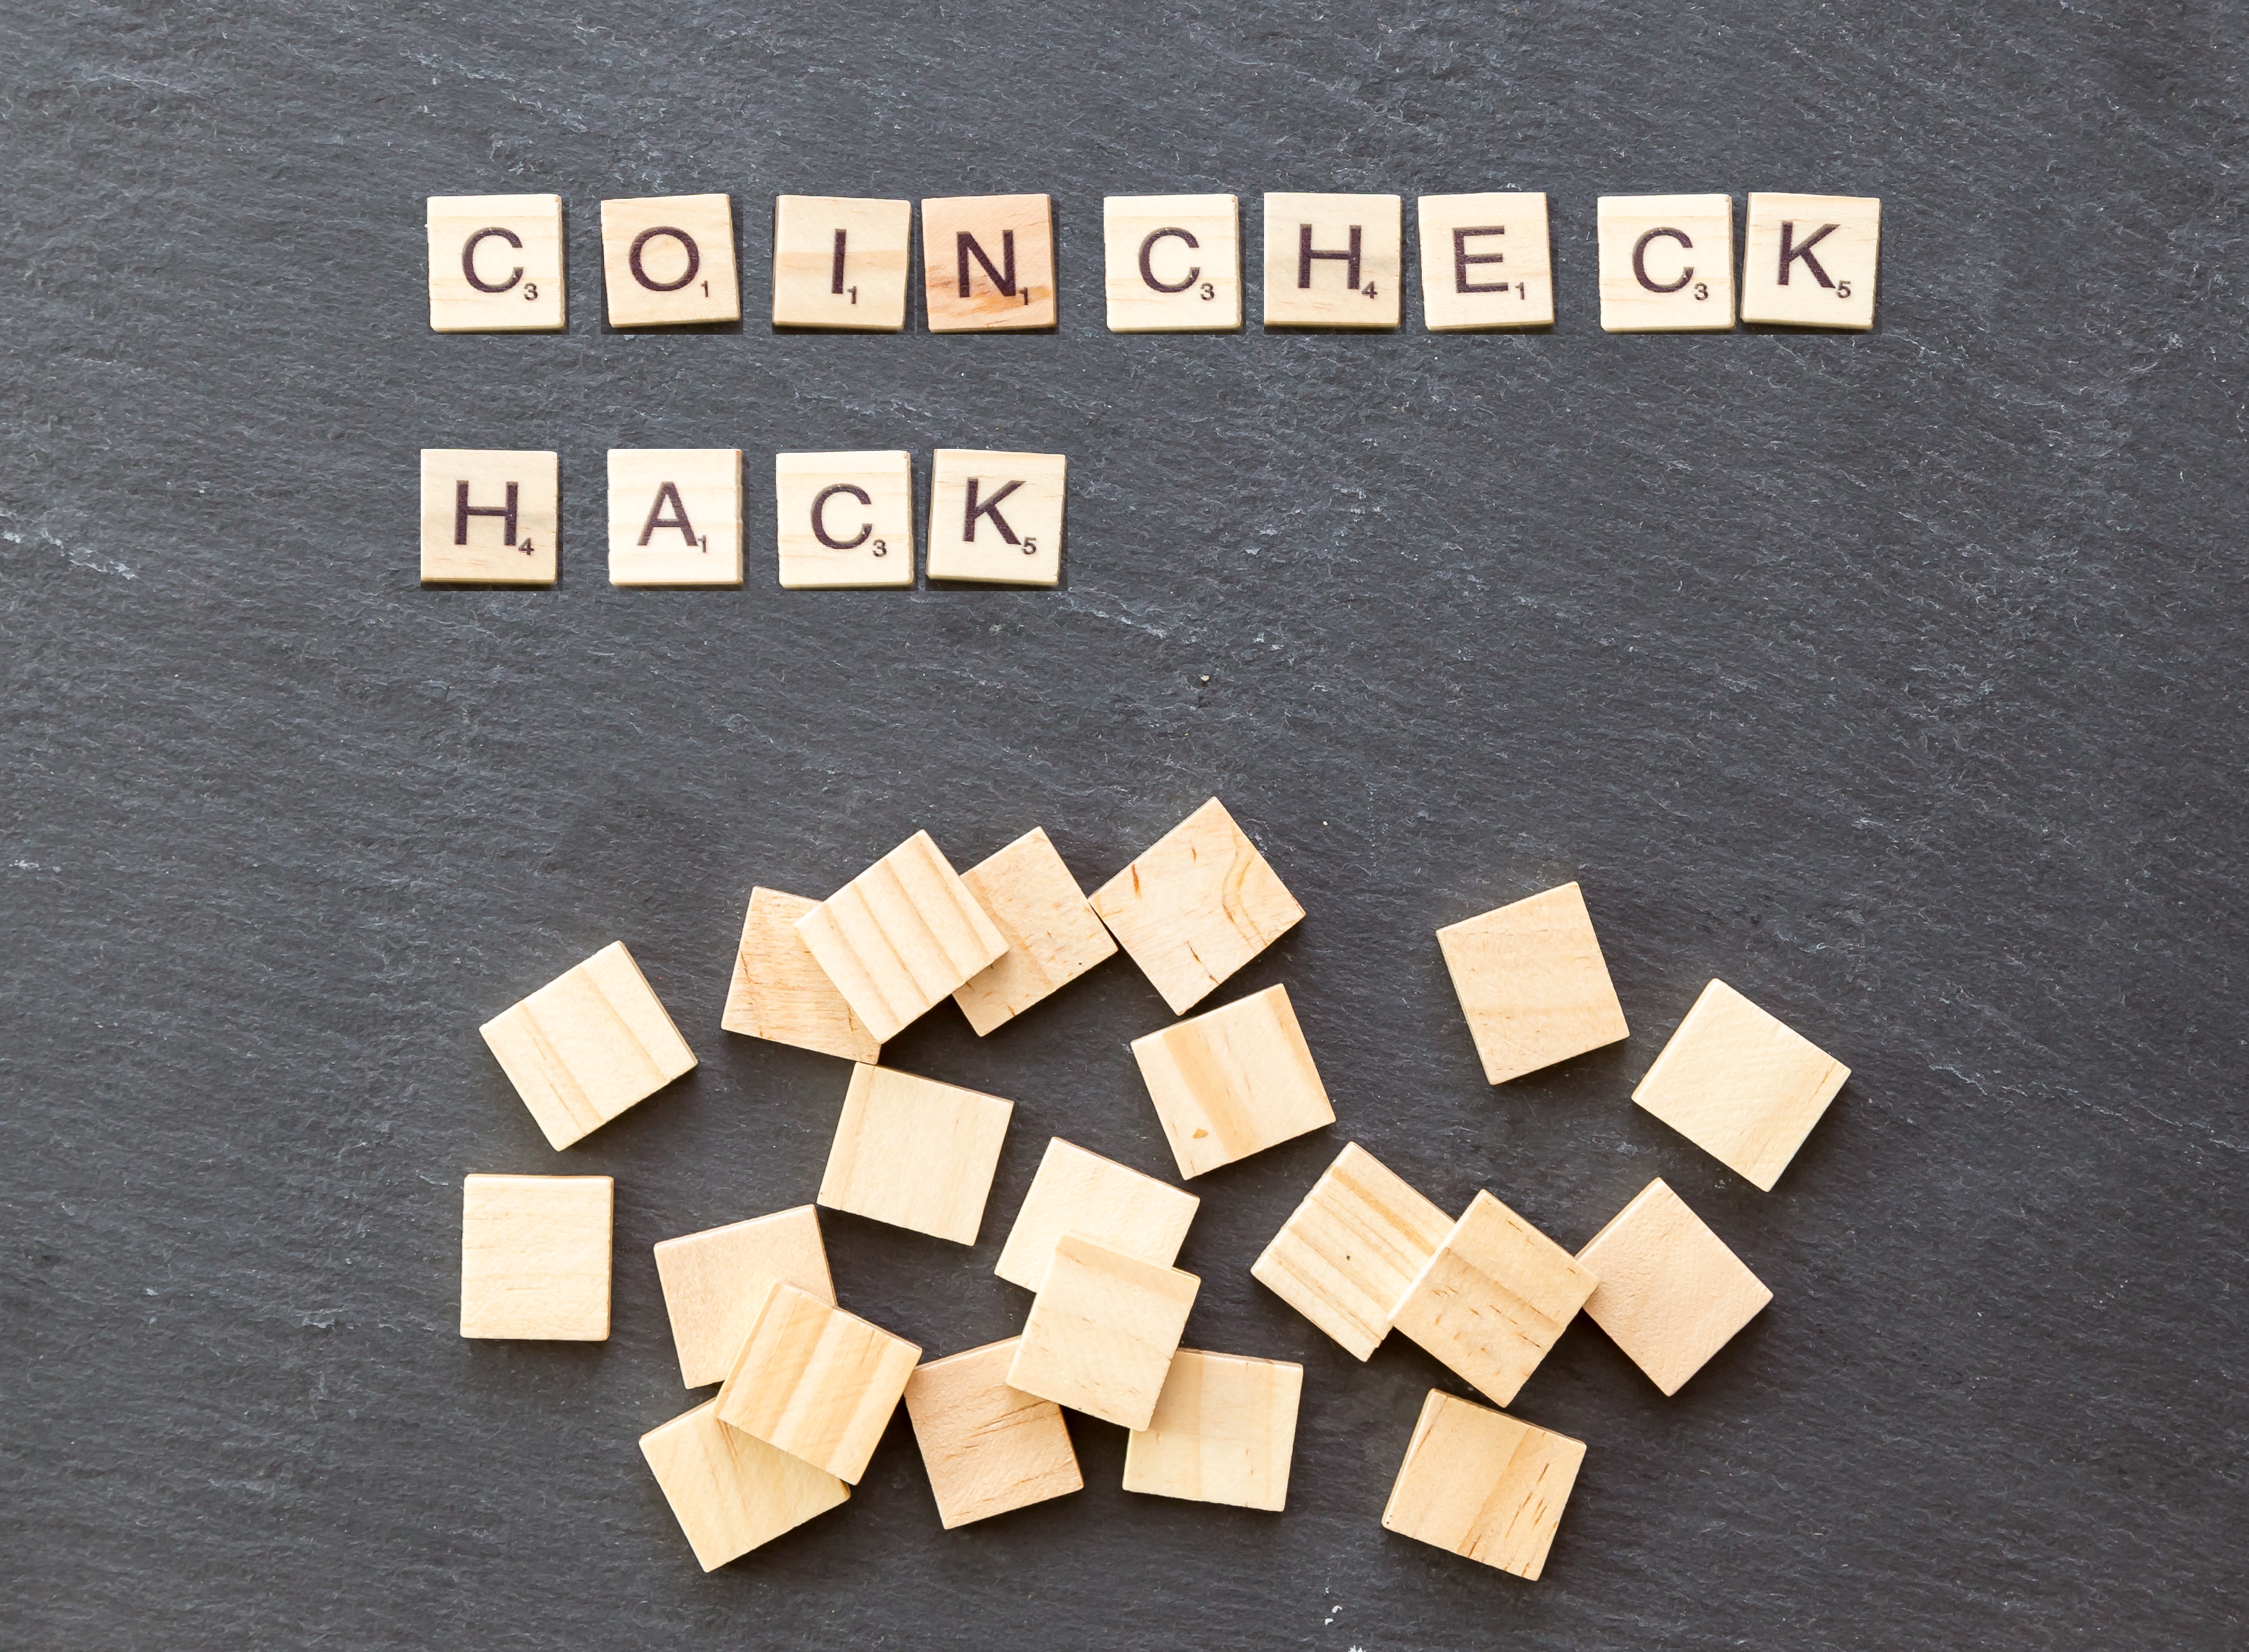 coincheck breach tokens vulnerability attacks